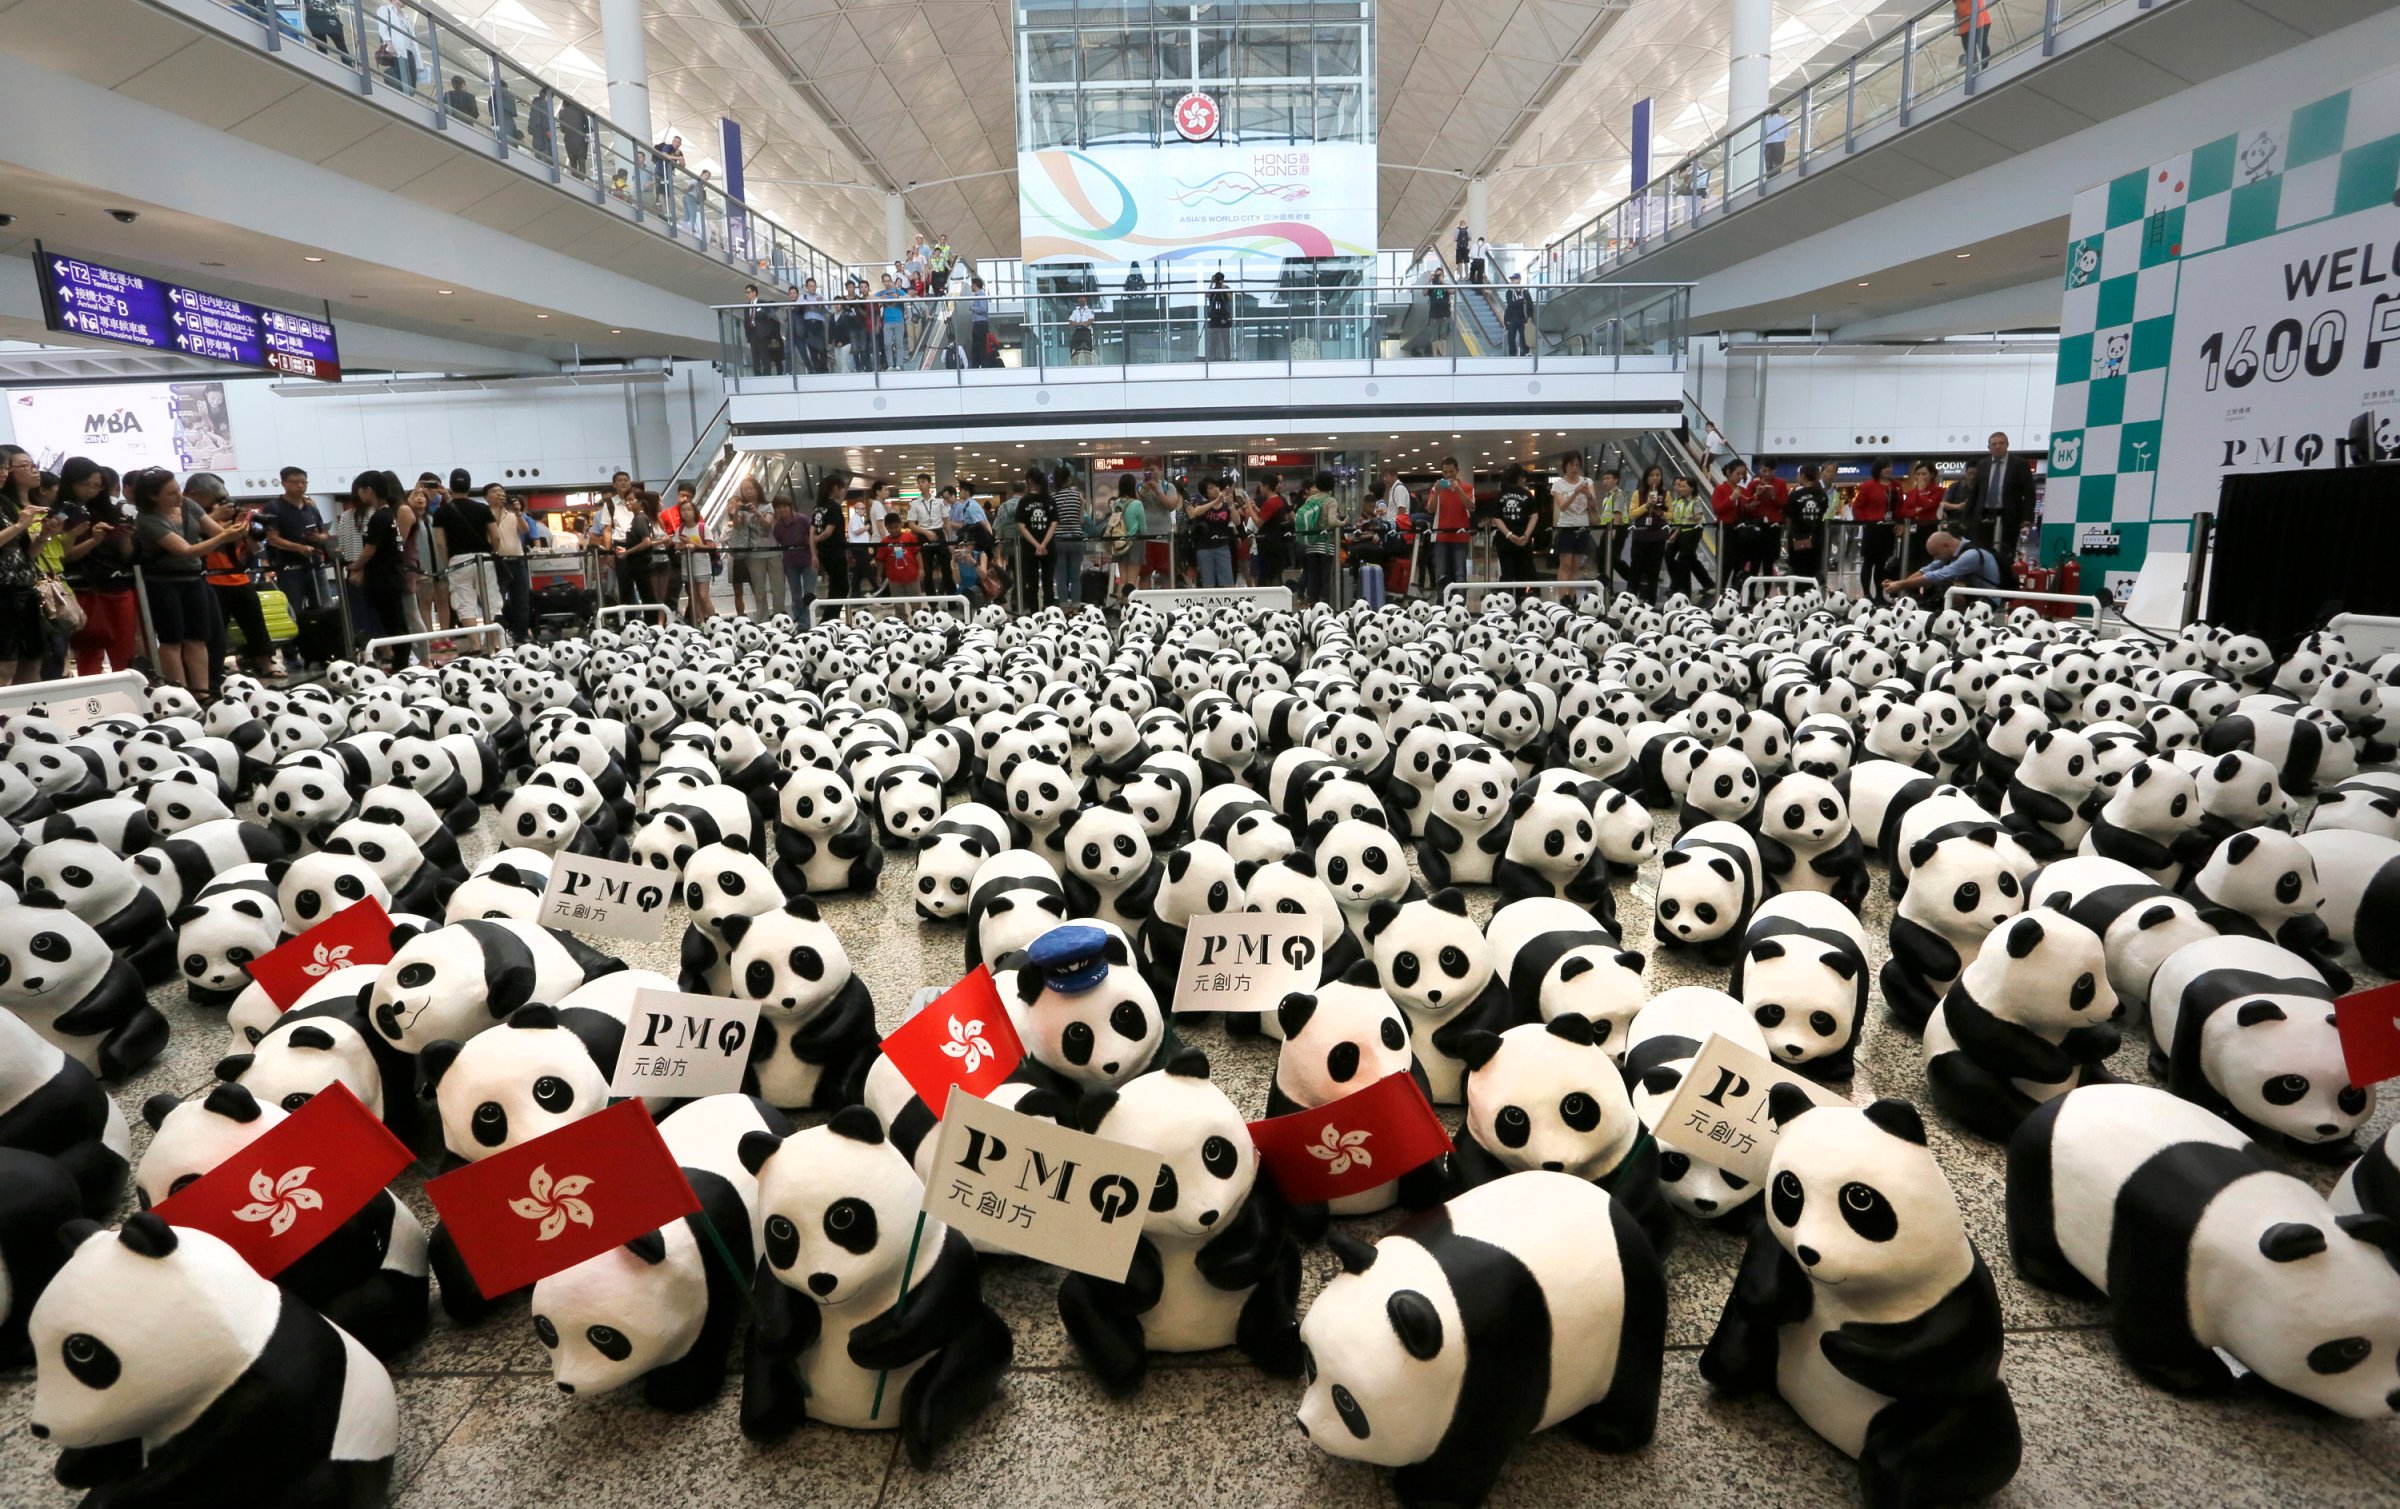 Hong Kong Pandas Tour Hong Kong Airport